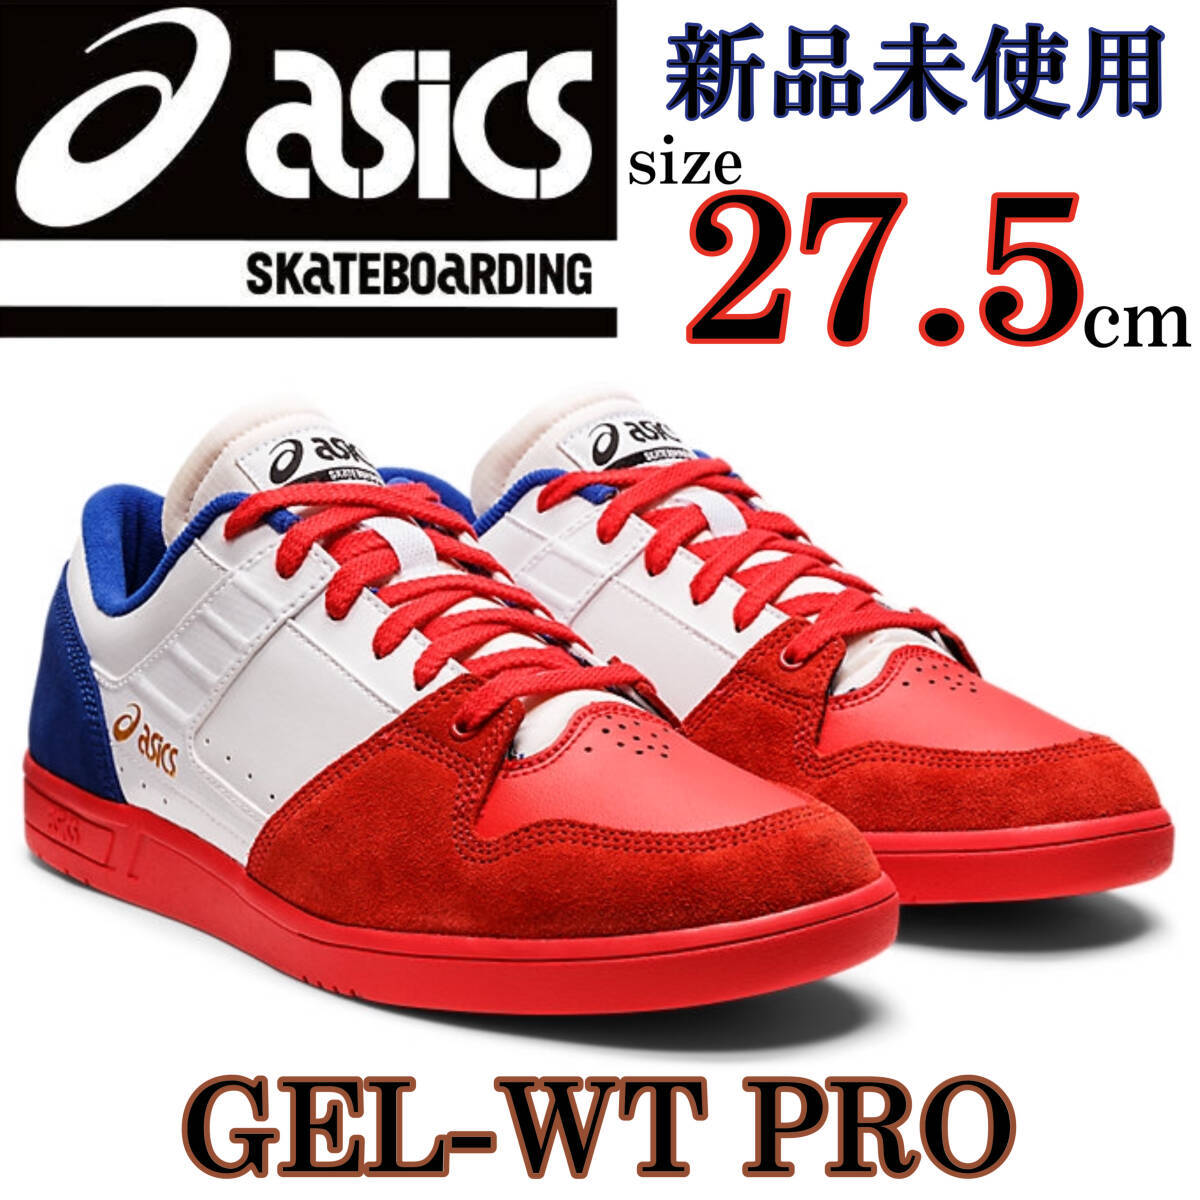 1 jpy ~ new goods 27.5cm Asics skate bo- DIN g gel double tea Pro ASICS skatebording GEL-WT PRO sneakers rare ske shoe 